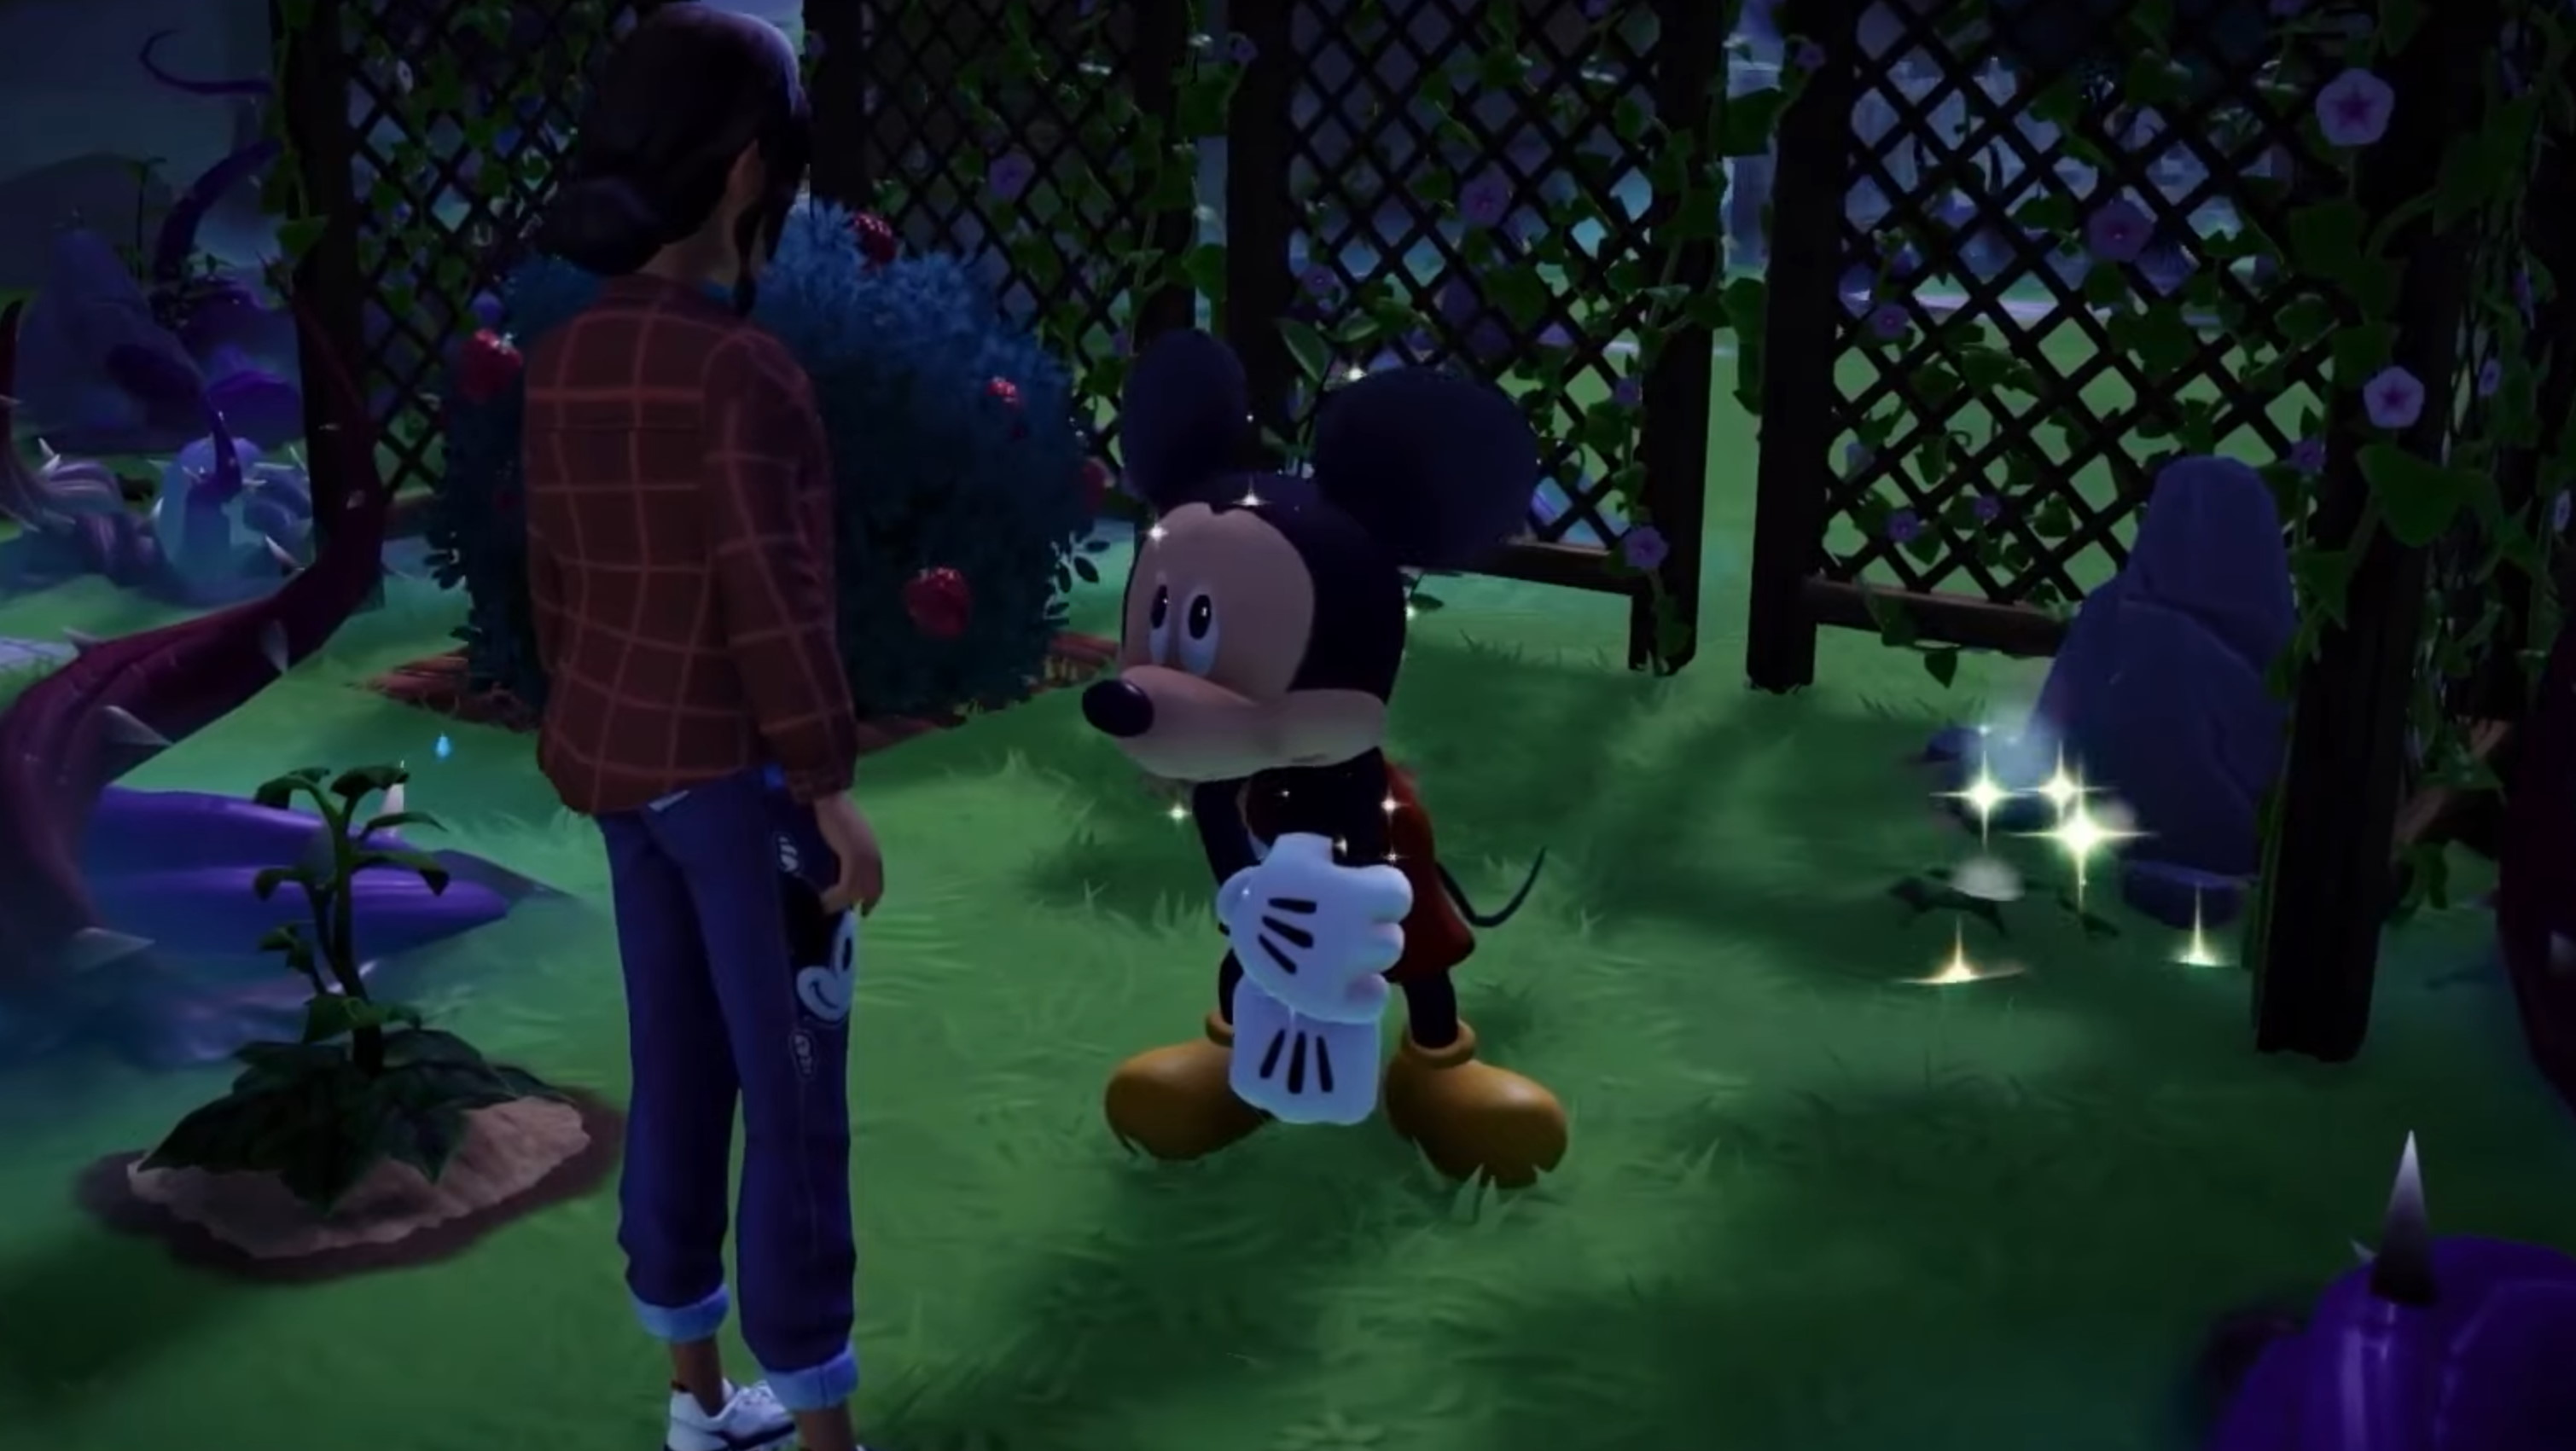 Disney Dreamlight Valley oyun fragmanı şaşırtıcı derecede acımasız bir sihirli krallığı ortaya koyuyor